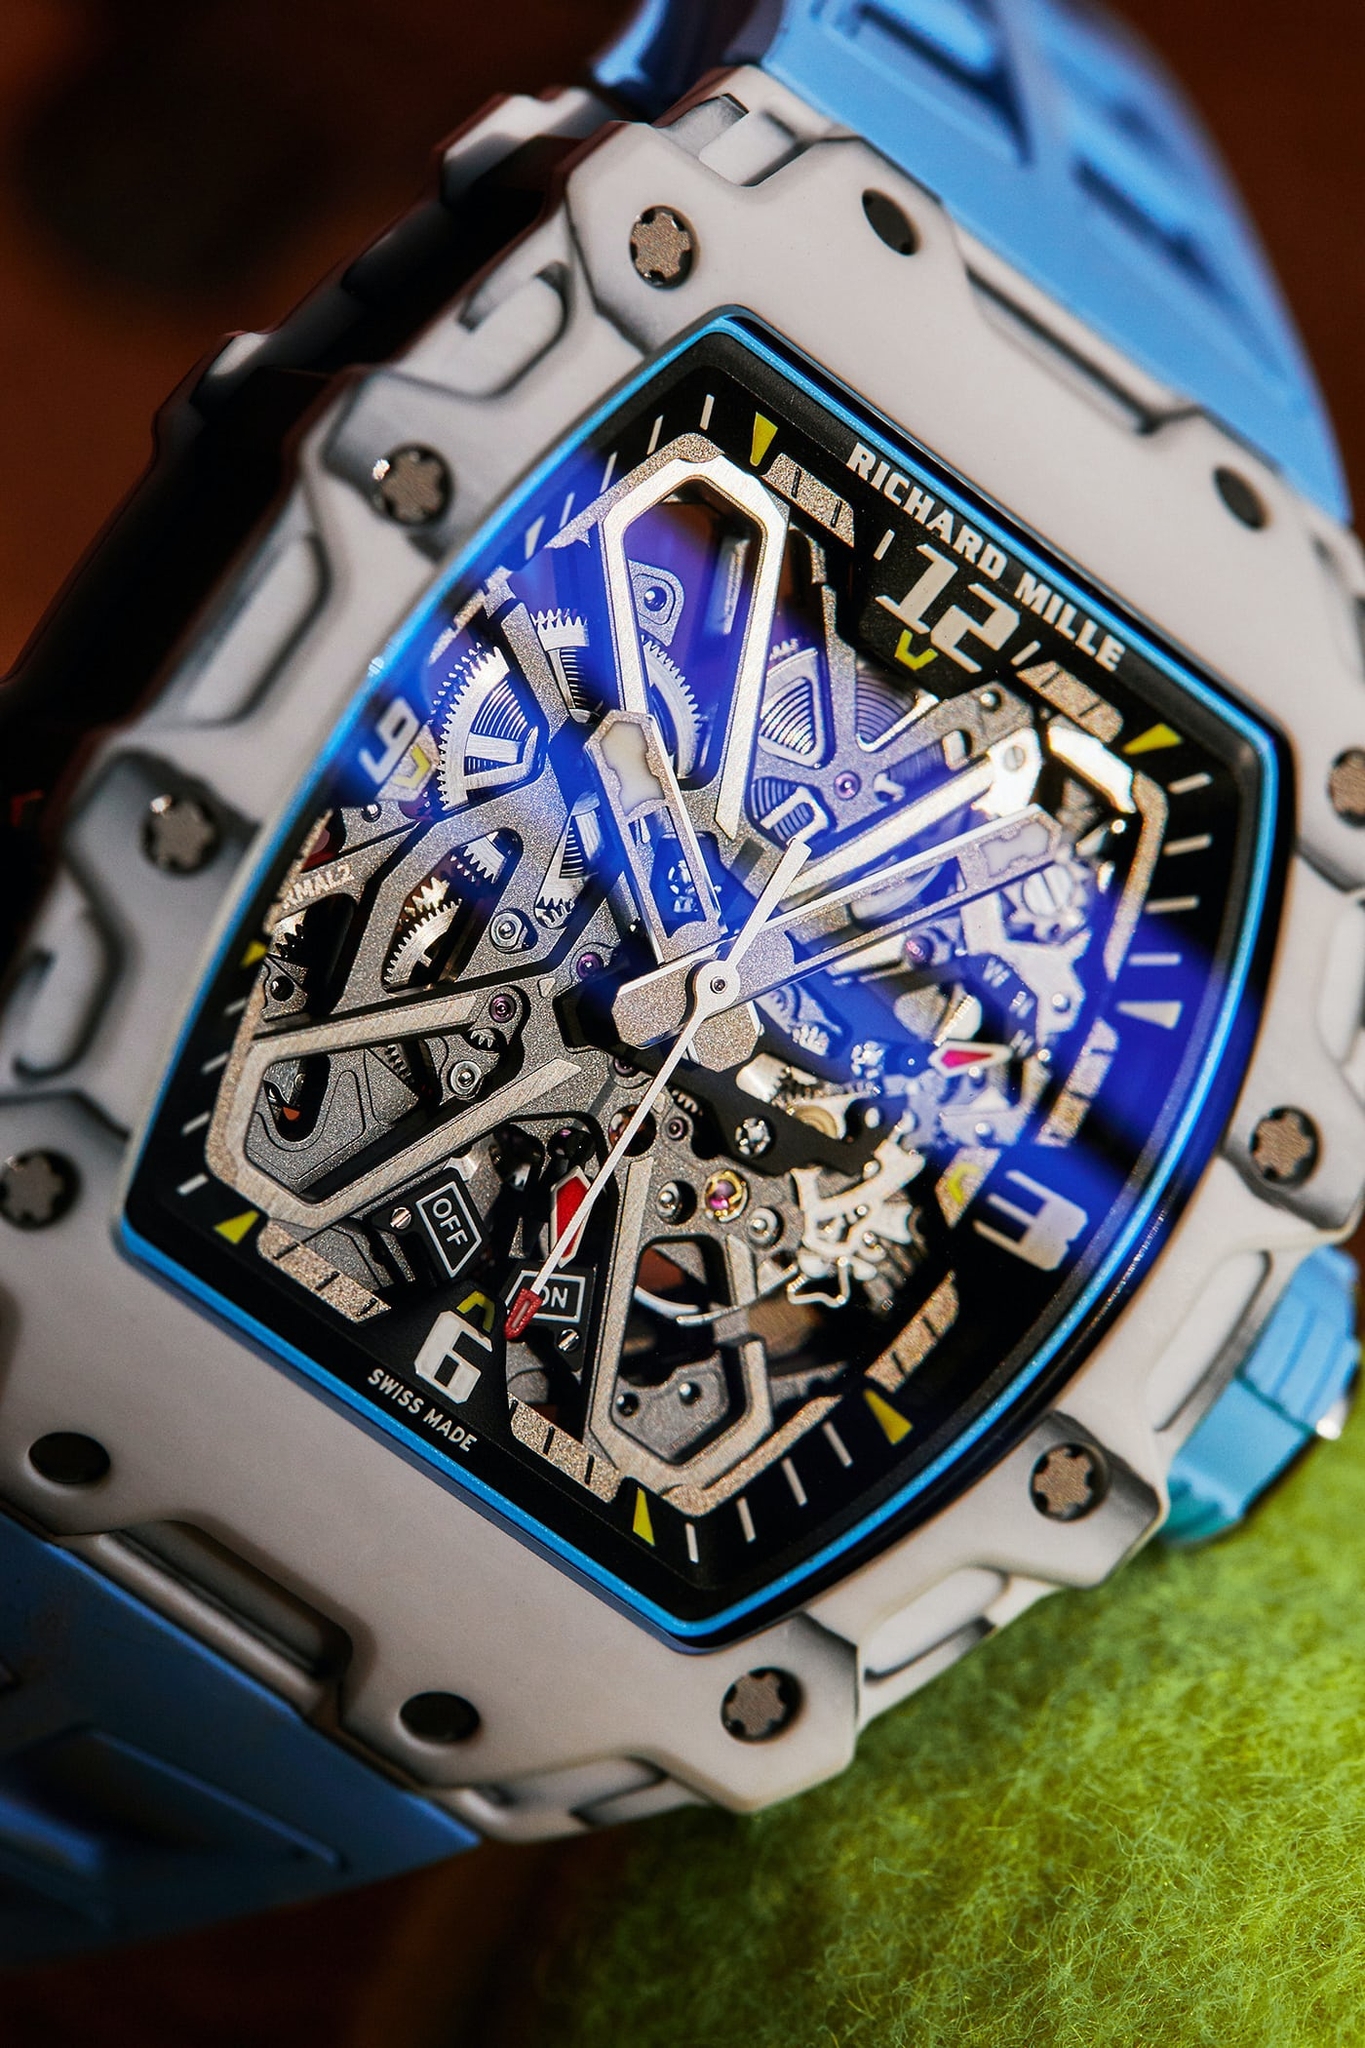 đồng hồ Richard Mille RM 35-03